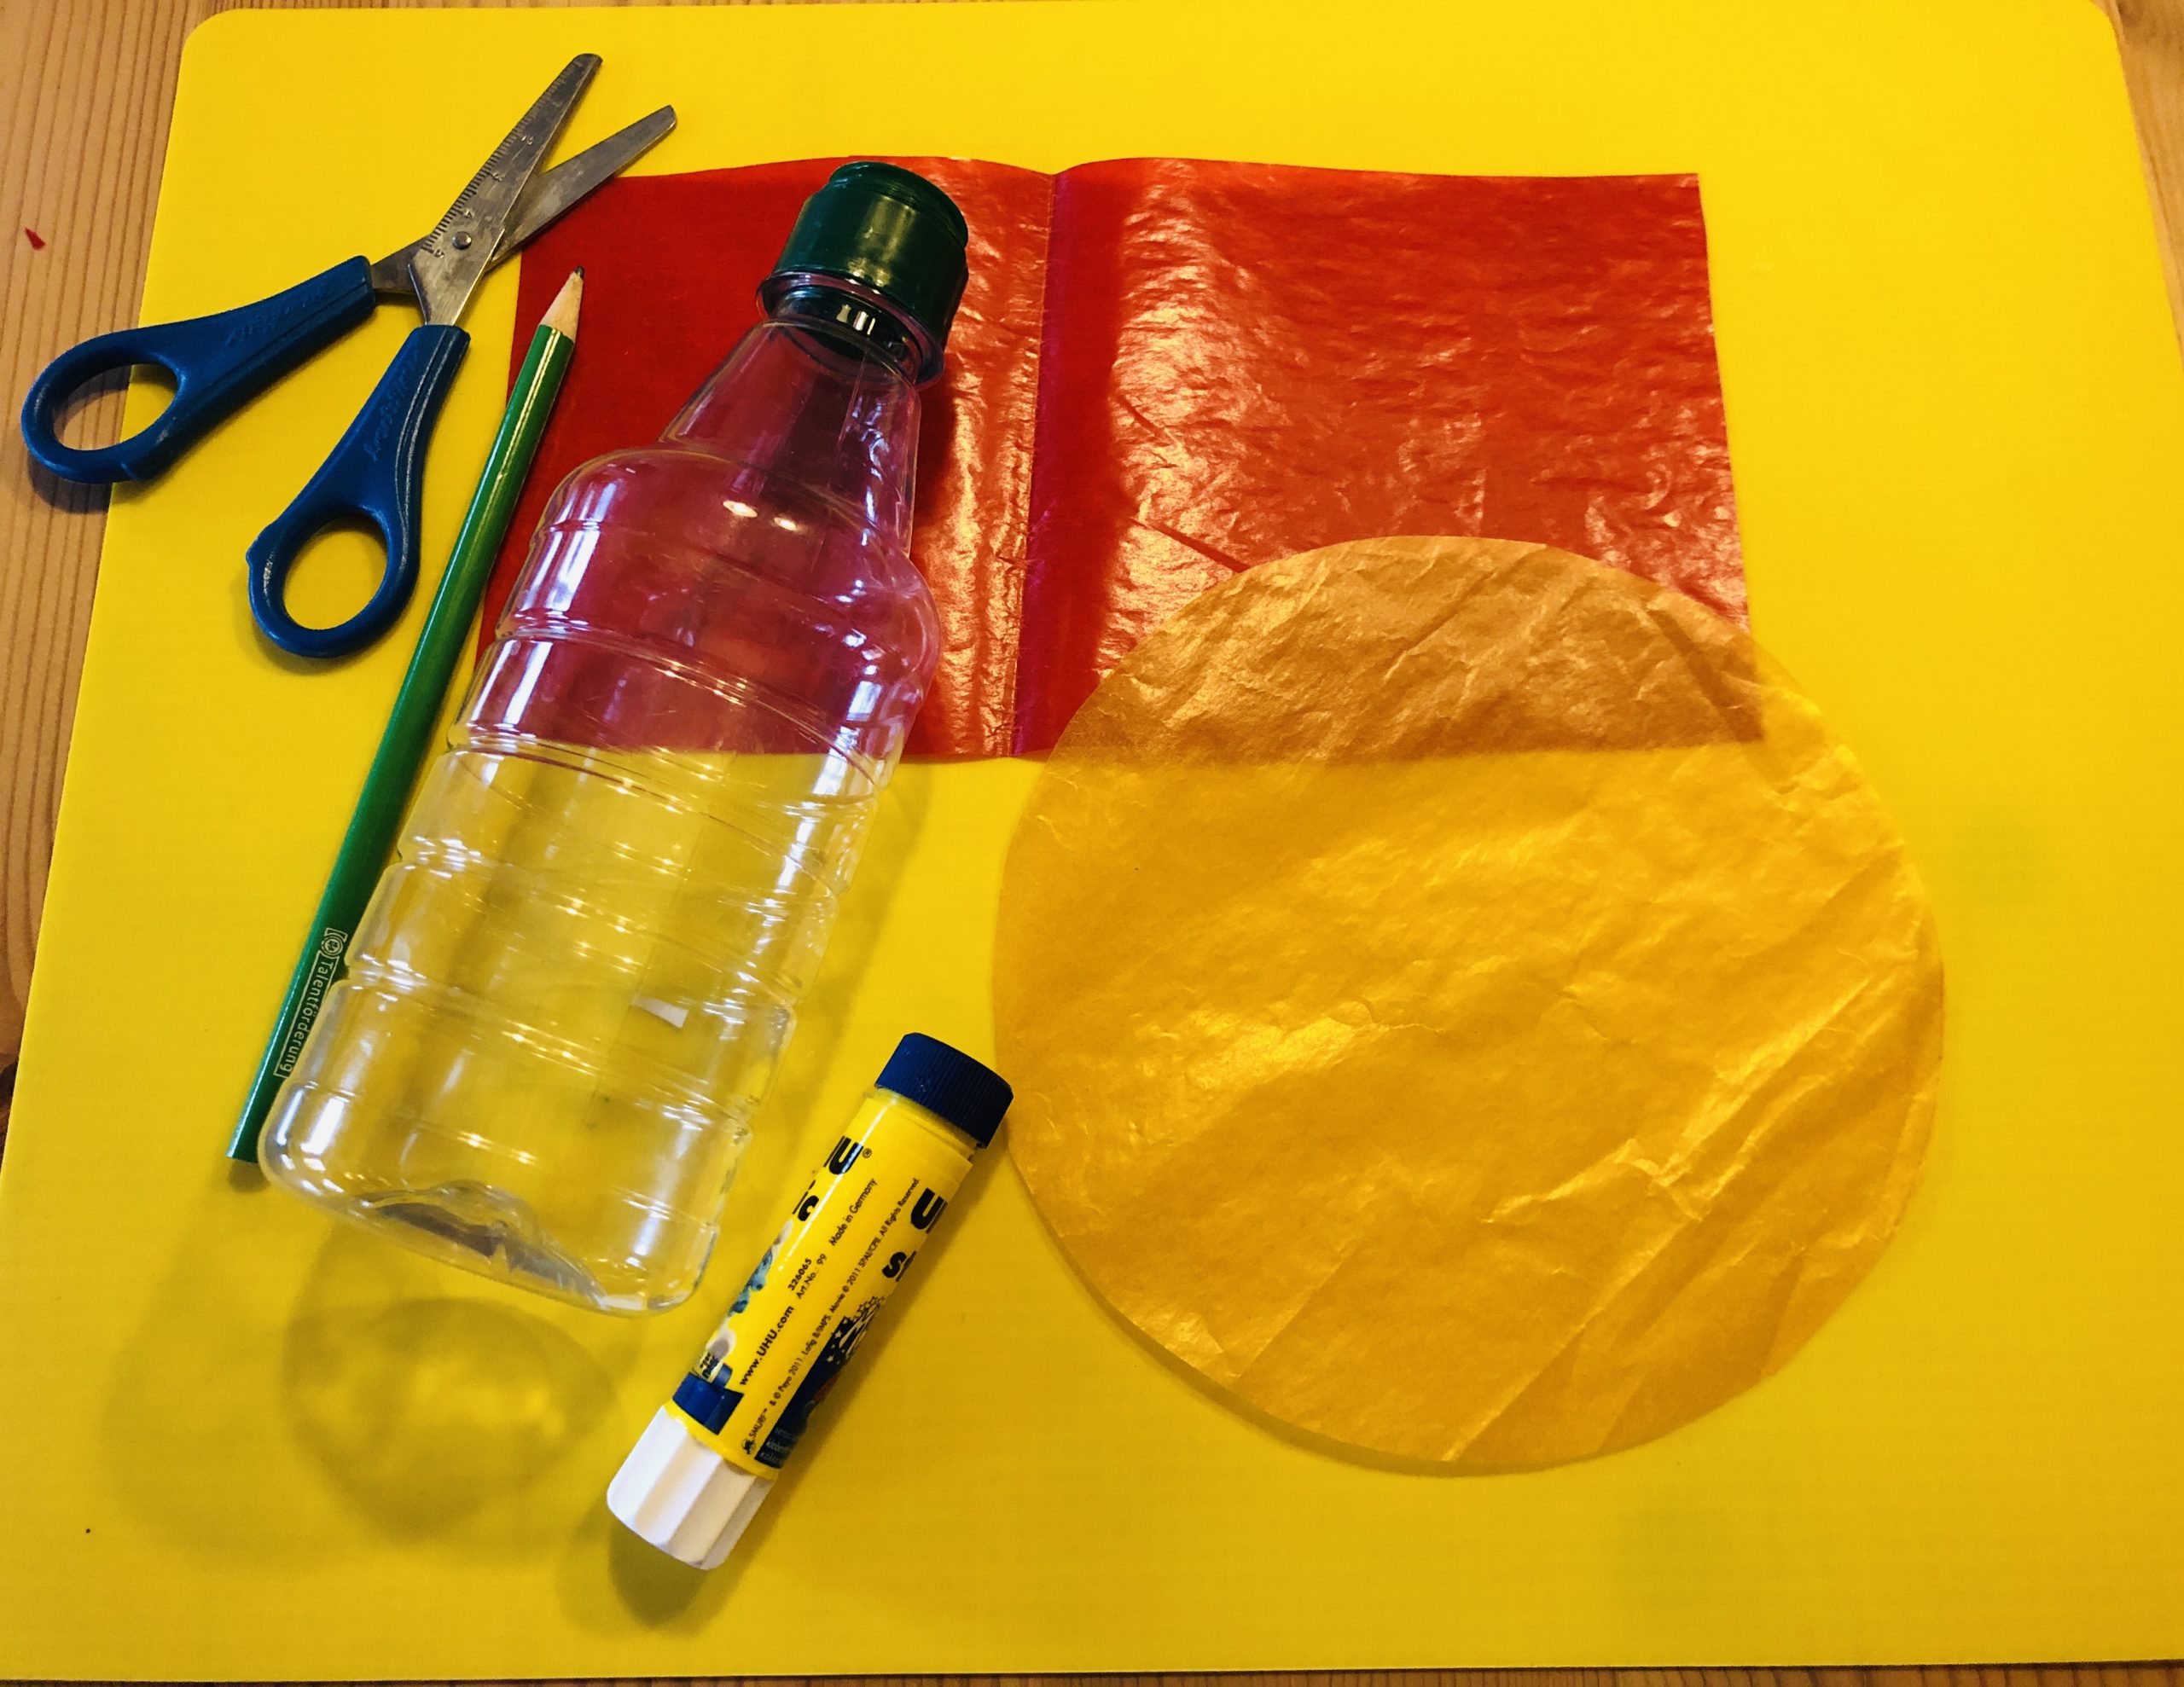 Bild zum Schritt 1 für die Kinder-Beschäftigung: 'Legt die Materialien bereit.  Eine leere Flasche, Schere, Kleber,...'